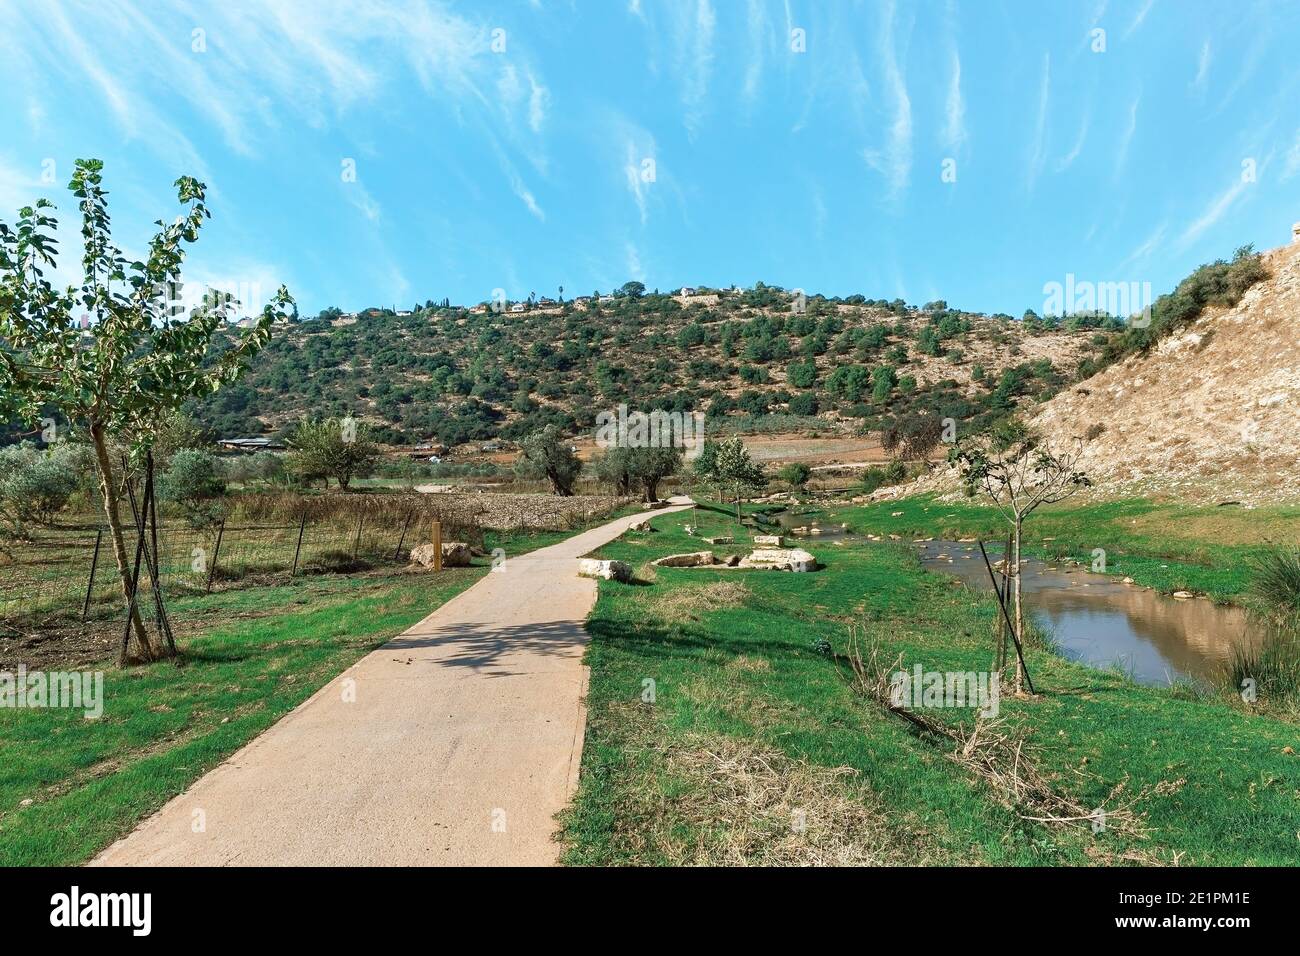 sentier de randonnée le long de la rivière sur le fond d'un Beau ciel en Israël Banque D'Images